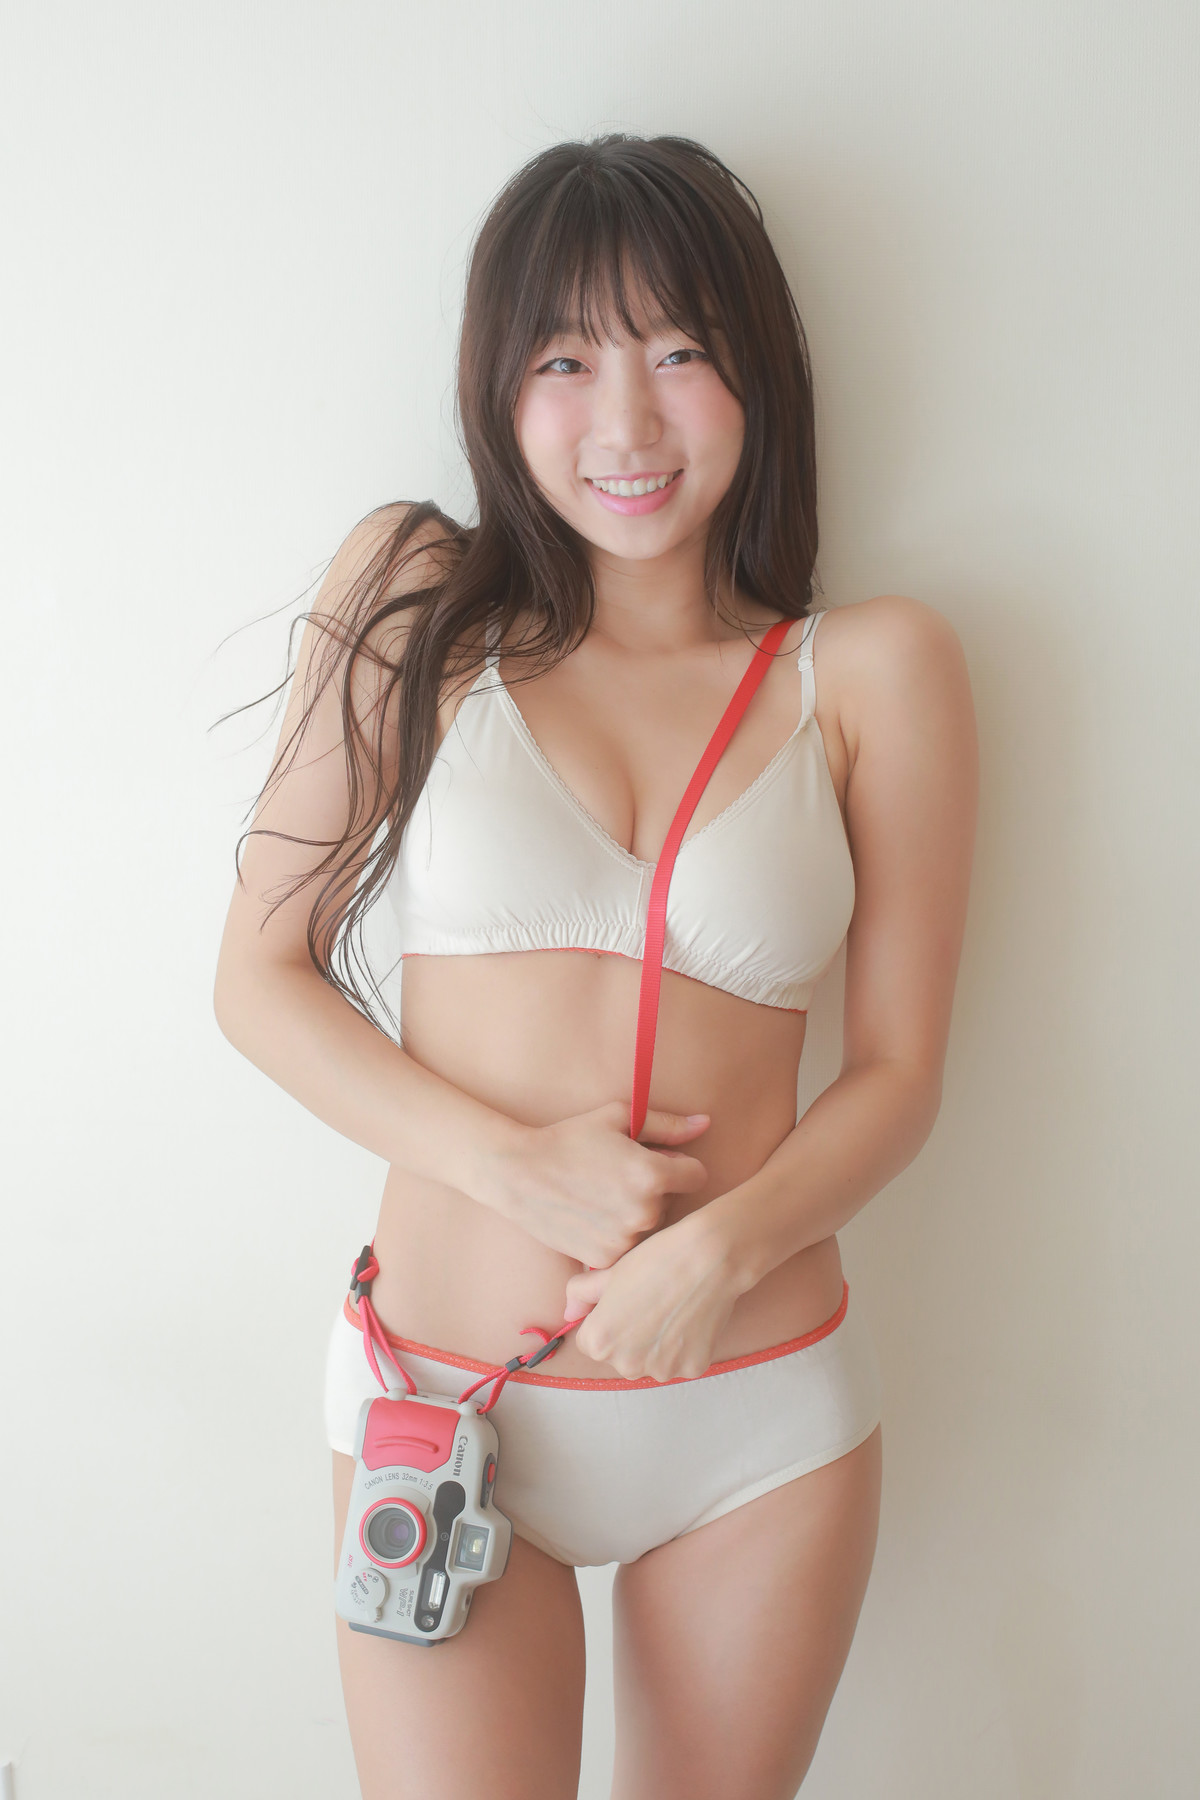 [Ынджи Пё 표은지] У корейской девушки белоснежная киска, а все ее тело потрясающее.